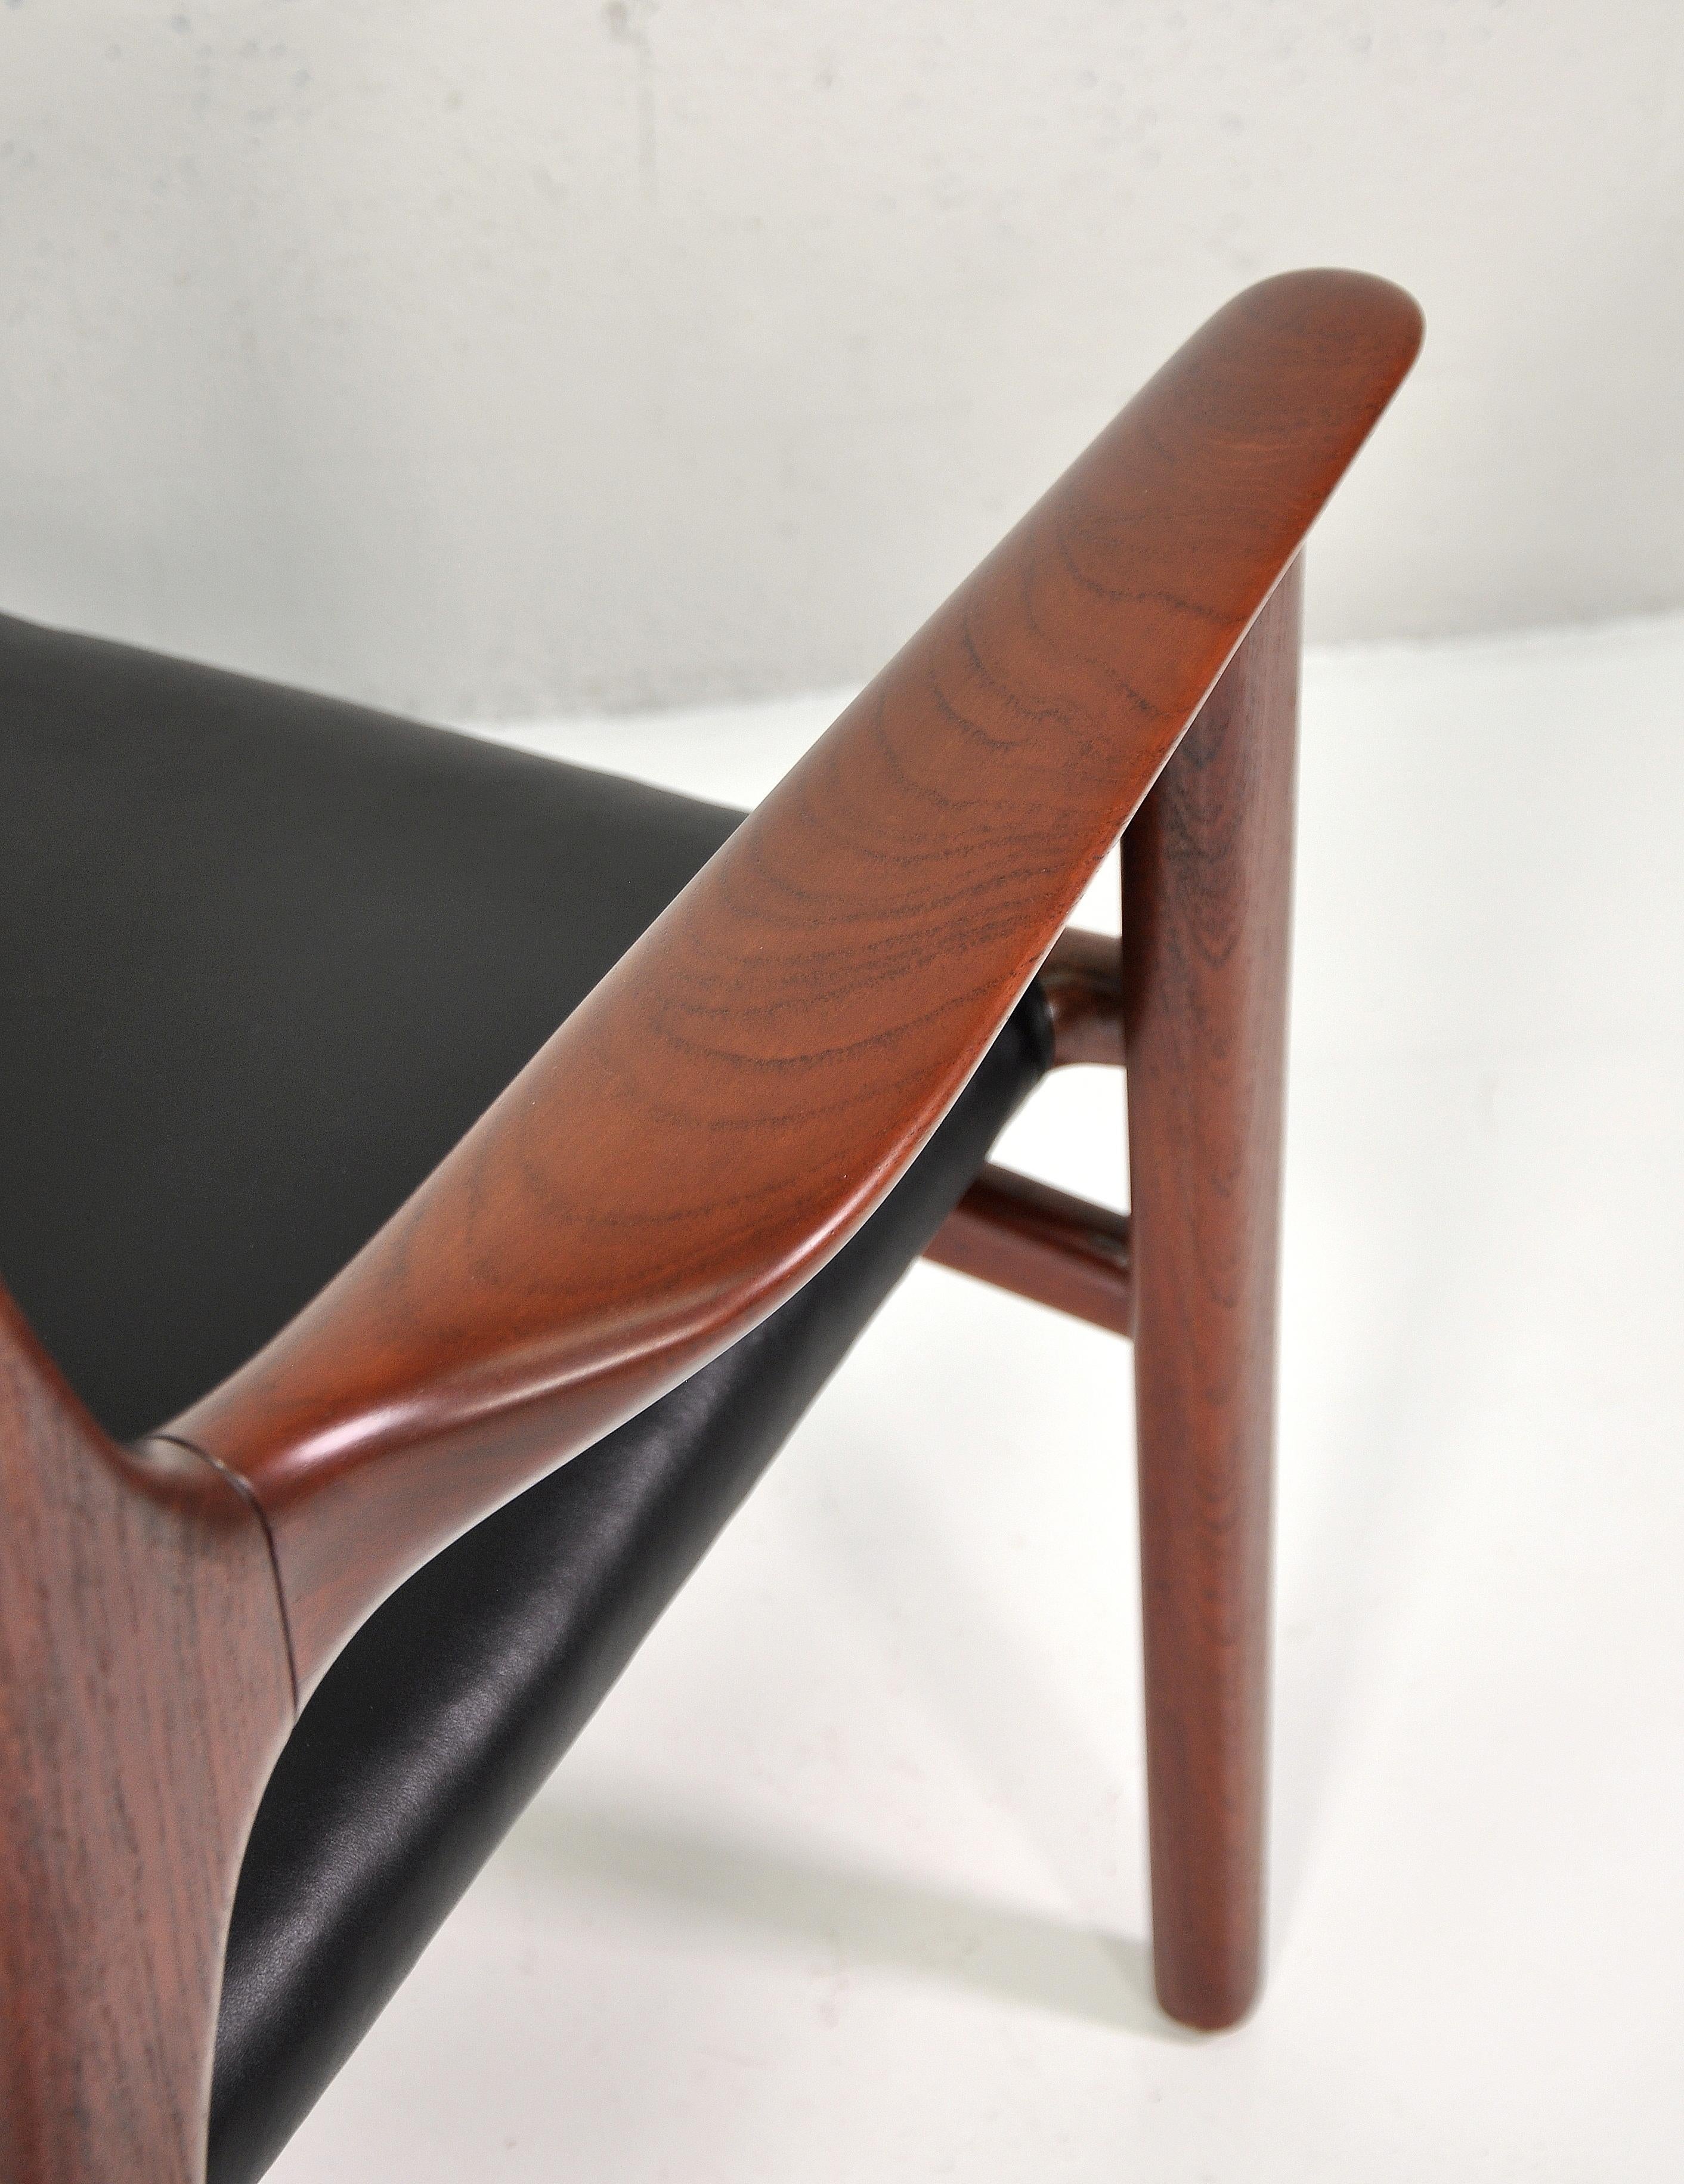 Fauteuil vintage conçu par Hans Wegner et réalisé par Johannes Hansen dans les années 1950. Rare chaise longue modèle JH-515. Cuir noir souple et véritable en excellent état. Le cadre ouvert en teck magnifiquement sculpté présente une riche patine